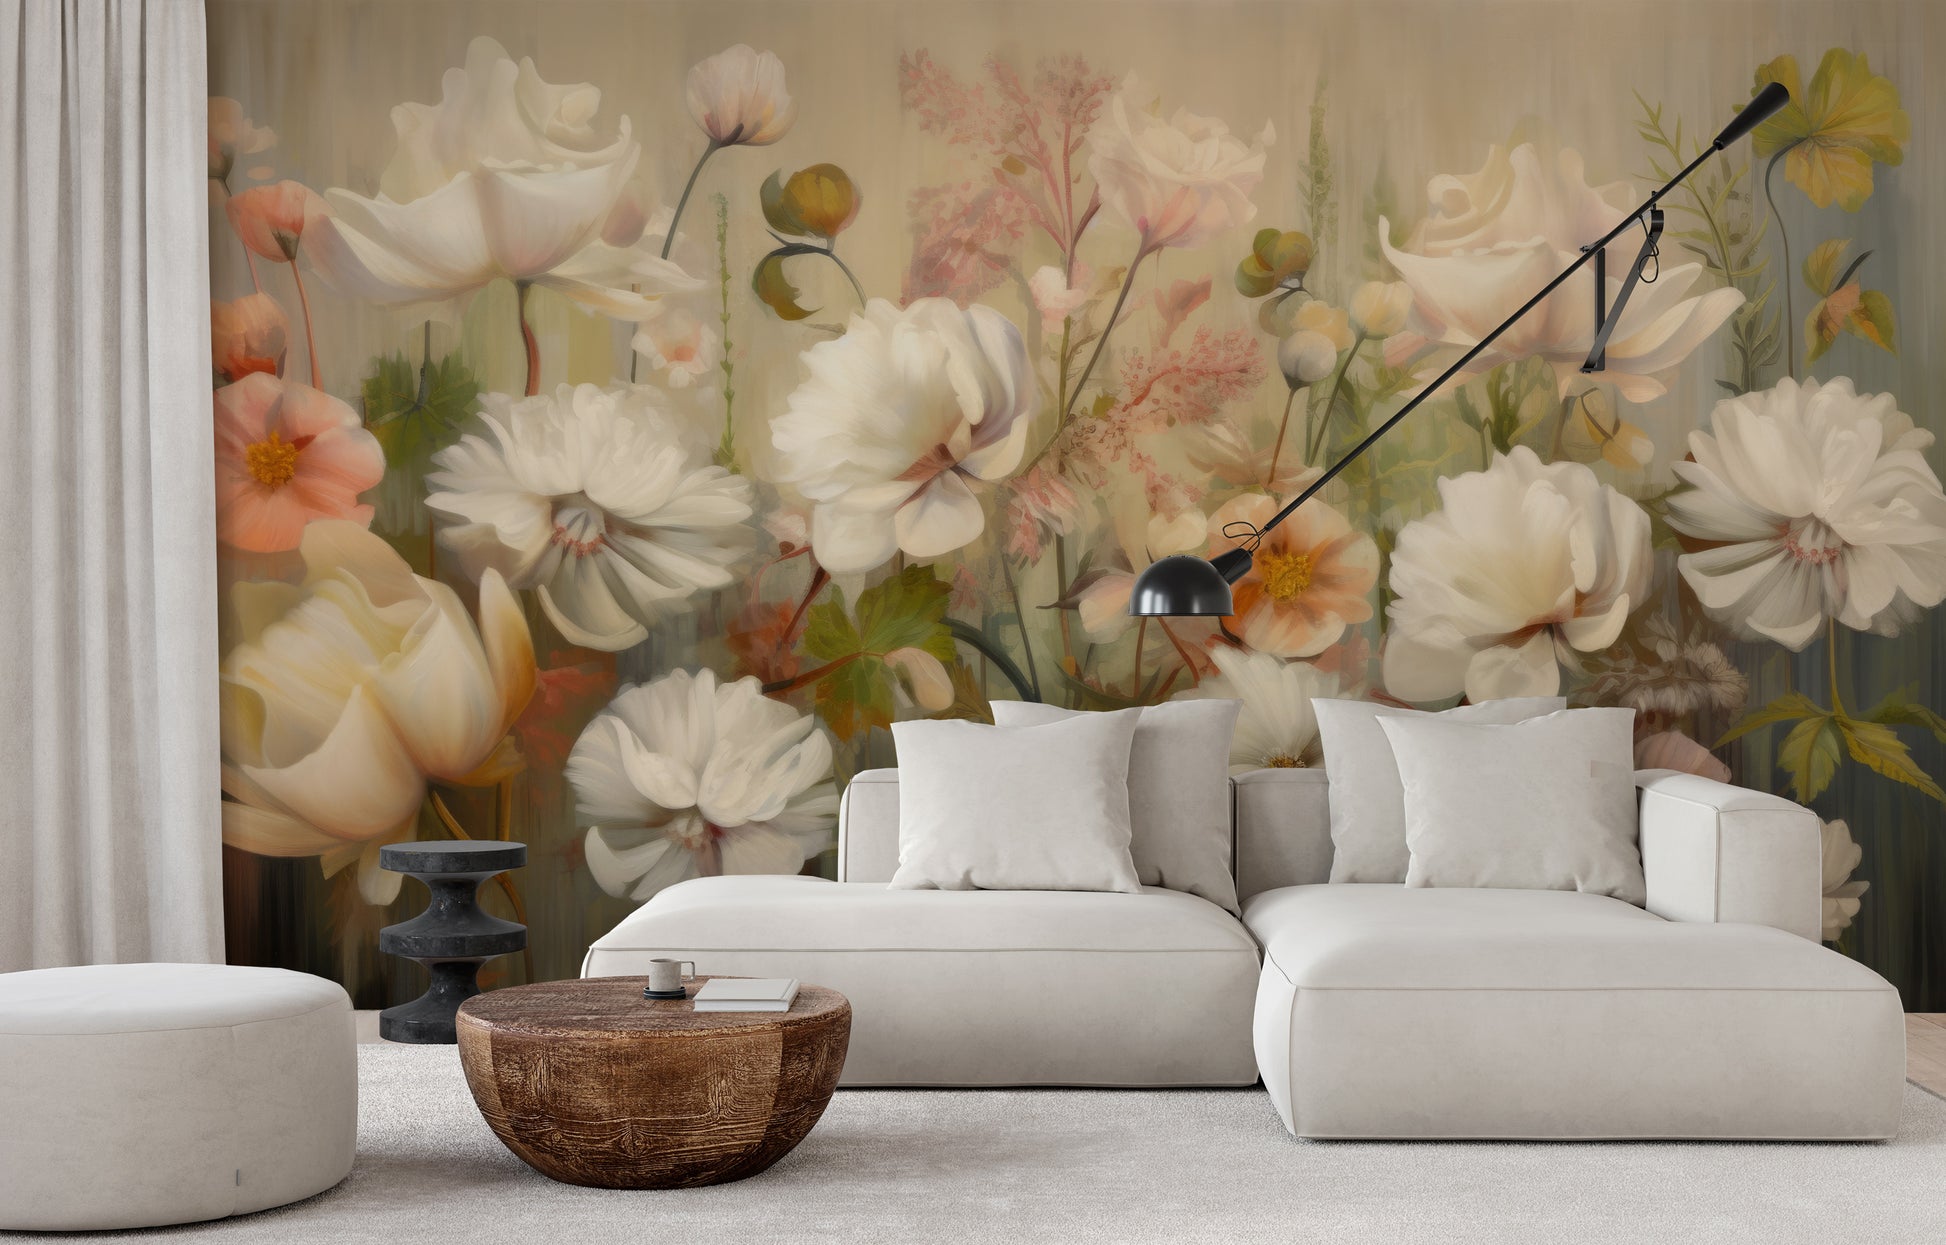 Wzór fototapety artystycznej o nazwie Serene Pastel Bouquet pokazanej w aranżacji wnętrza.